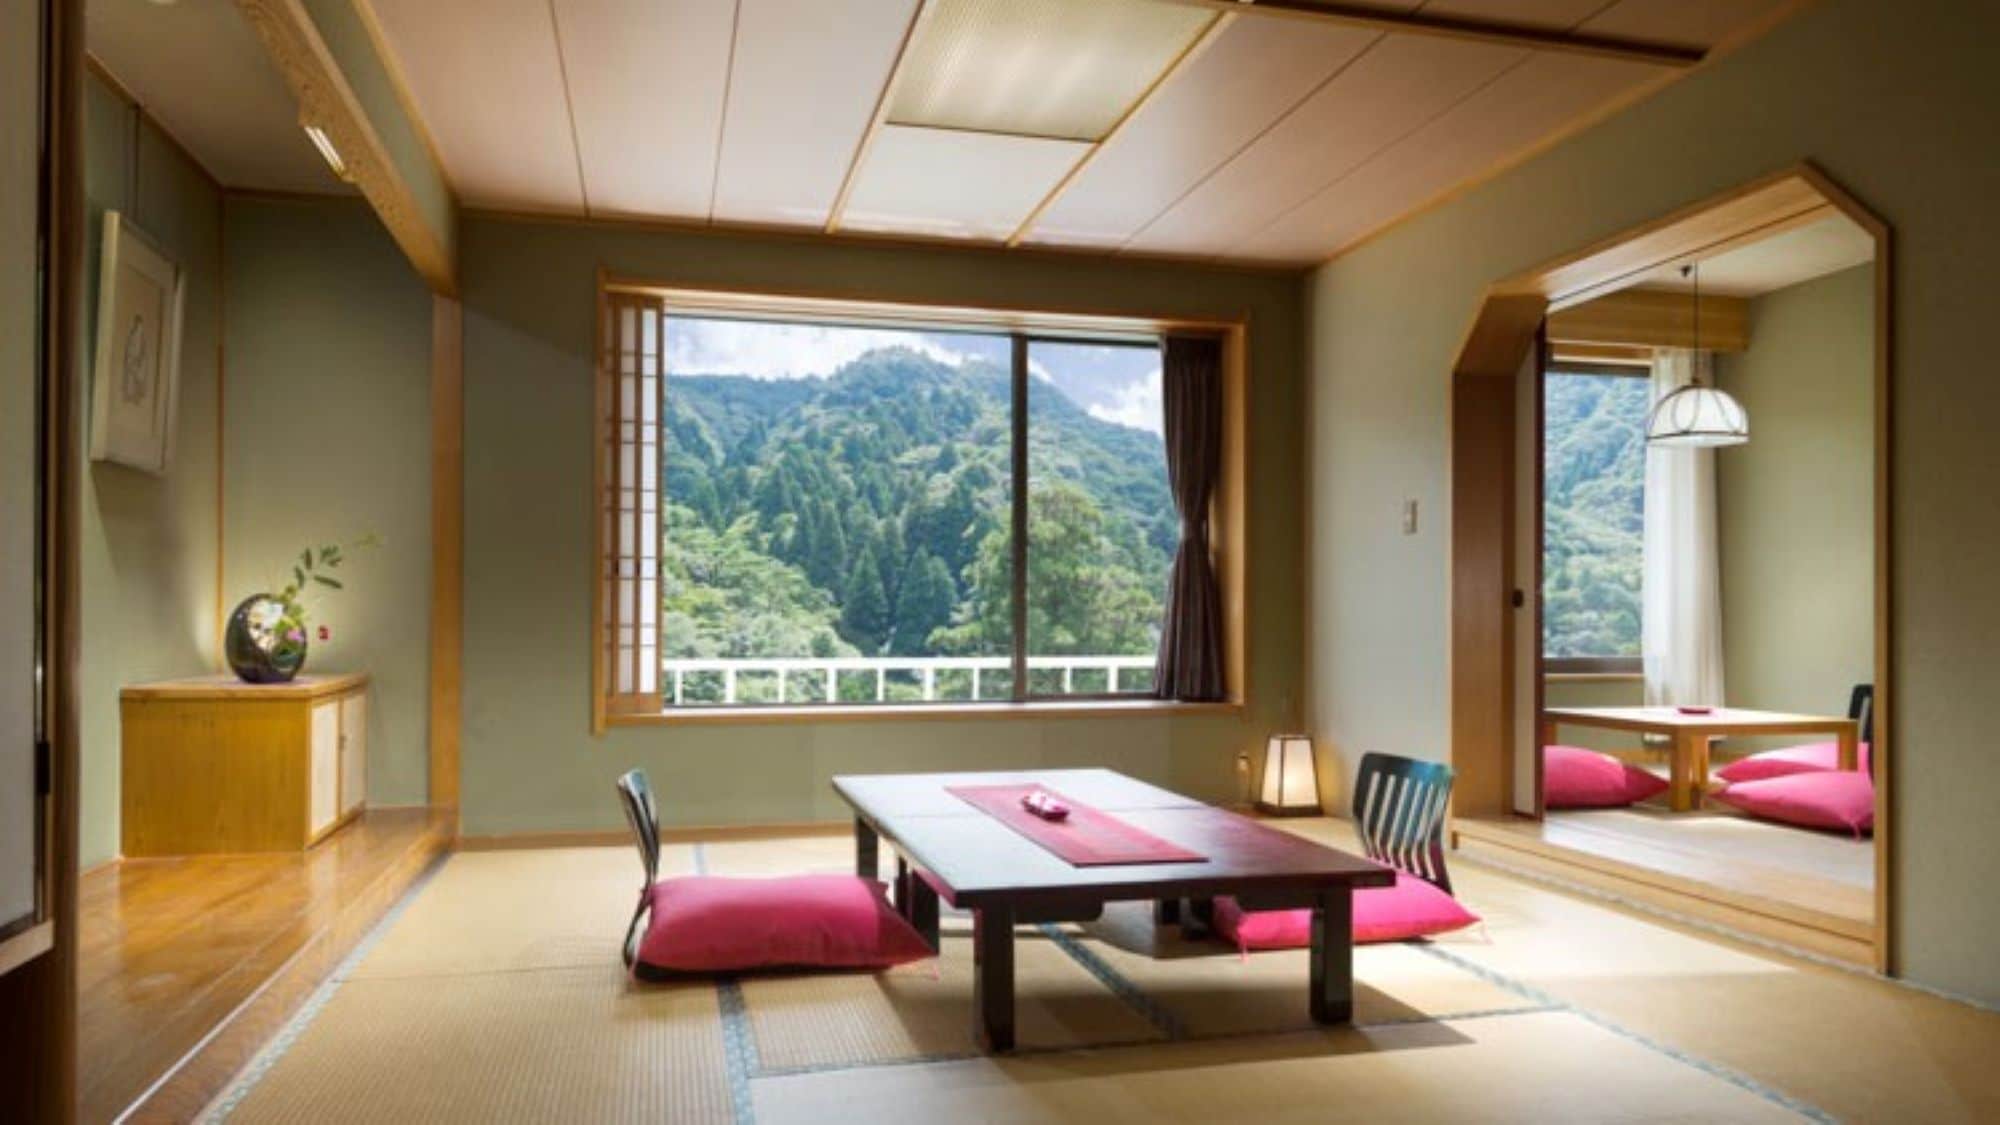 【방 식화실(일례)】대자연에 둘러싸인 치유의 일본식 방 공간